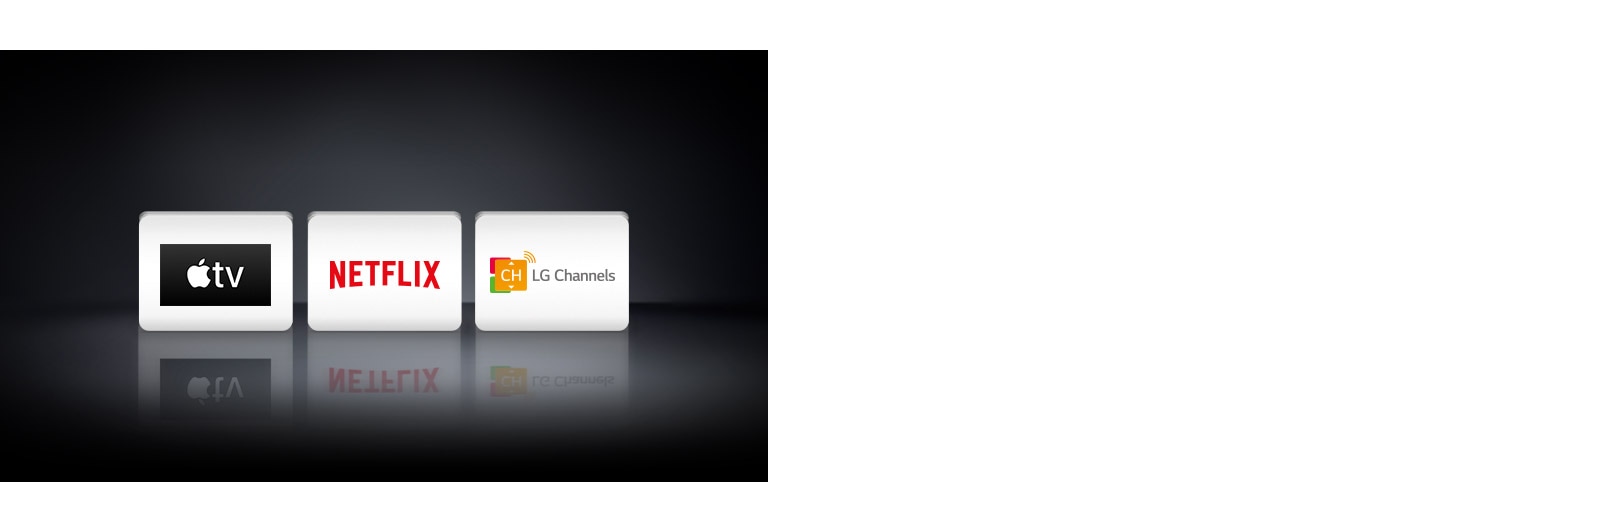 Loga tří aplikací zobrazená zleva doprava: Apple TV, Netflix a LG Channels.